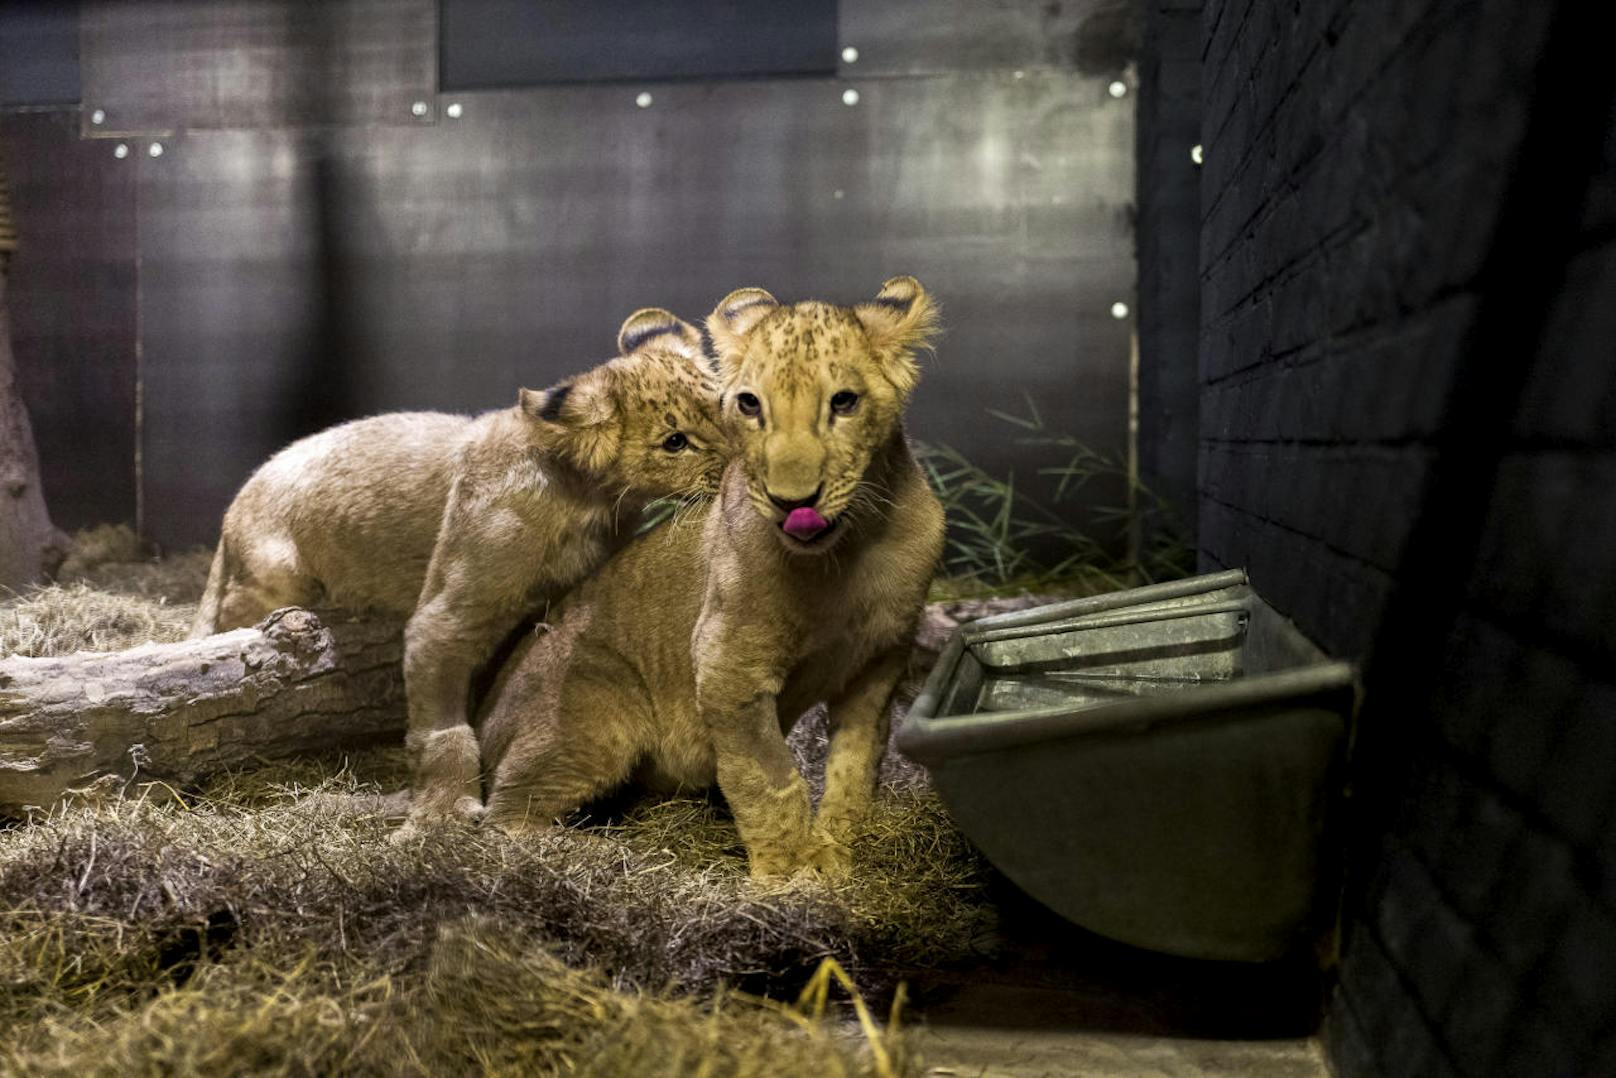 Obwohl seine Lizenz bereits 2014 auslief, blieb er weiter kostenlos für Besucher geöffnet. Derzeit leben über 25 Tiere - darunter Löwen, Hirsche, Rentiere, Lamas, Füchse, Schweine und Vögel - in dem illegalen Zoo.